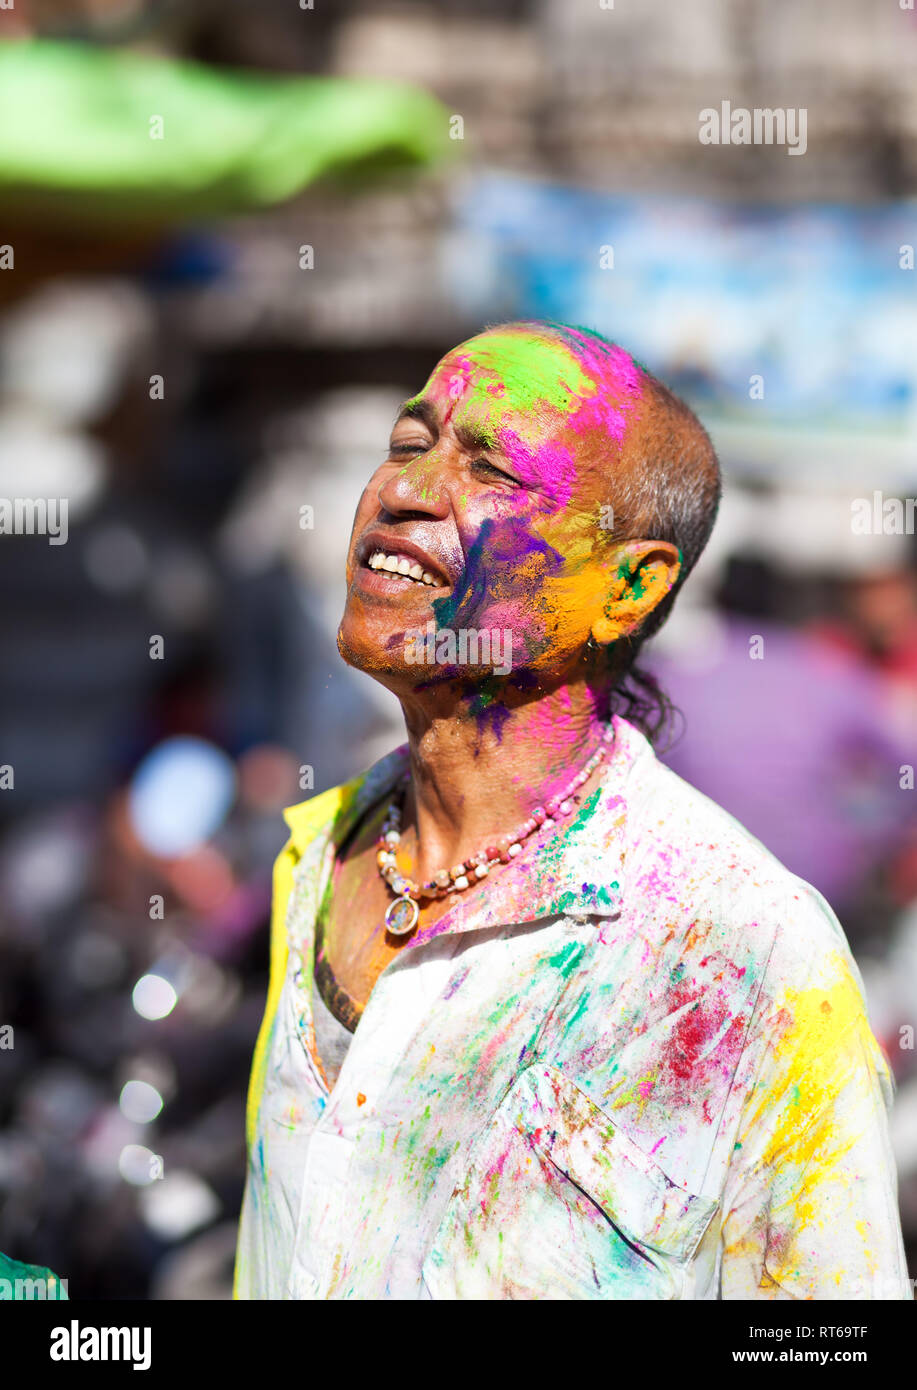 Udaipur, India - 6 Marzo 2015: Ritratto di uomo indiano con faccia dipinta celebrando il coloratissimo festival di Holi sulla strada. Foto Stock